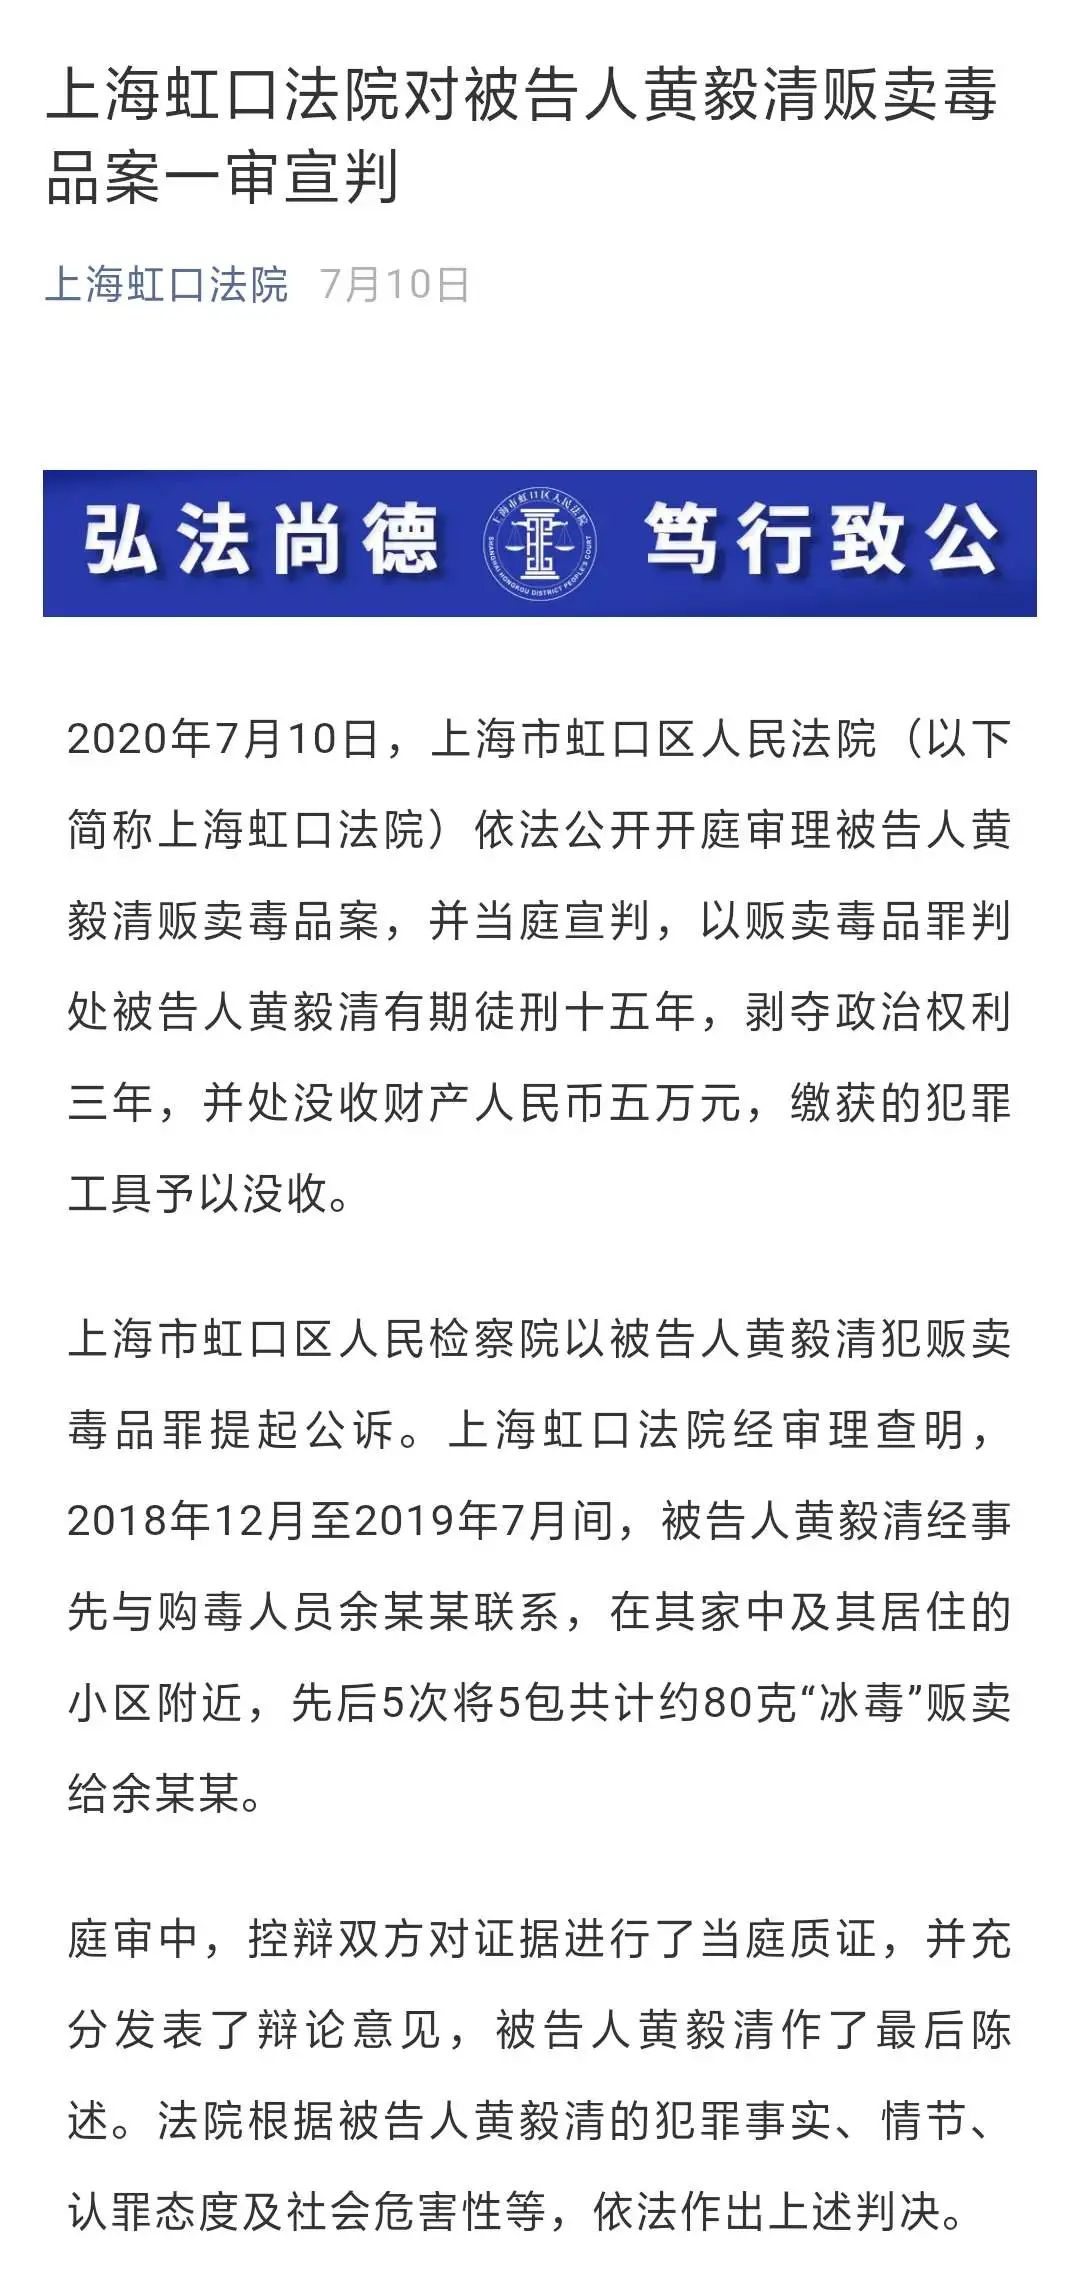 上海市第二中级法院受理被告黄毅清对贩毒的上诉